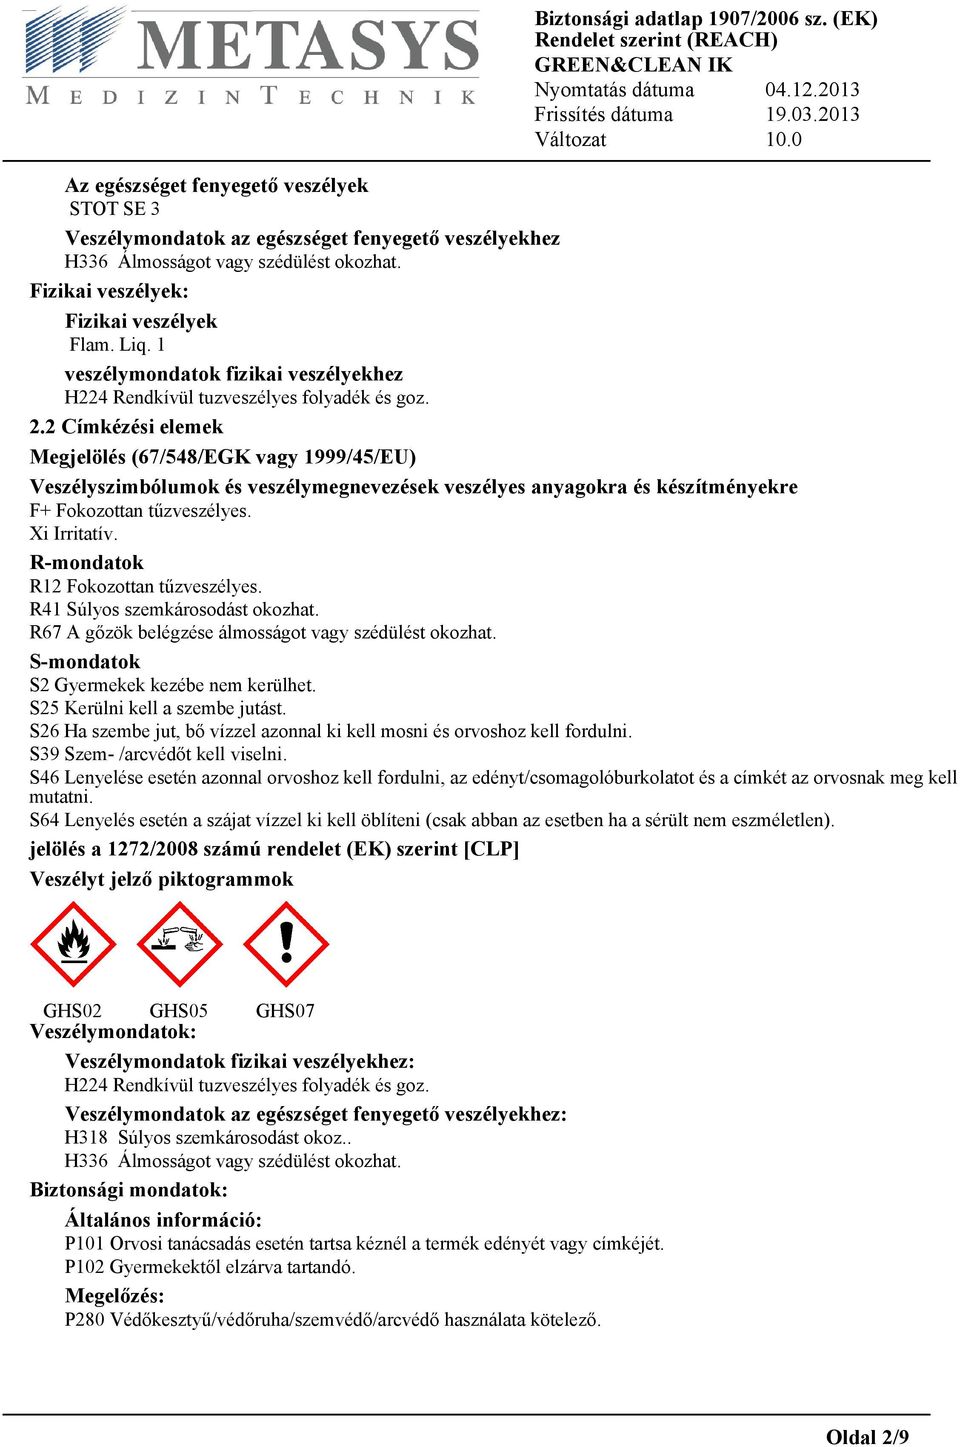 2 Címkézési elemek Megjelölés (67/548/EGK vagy 1999/45/EU) Veszélyszimbólumok és veszélymegnevezések veszélyes anyagokra és készítményekre F+ Fokozottan tűzveszélyes. Xi Irritatív.